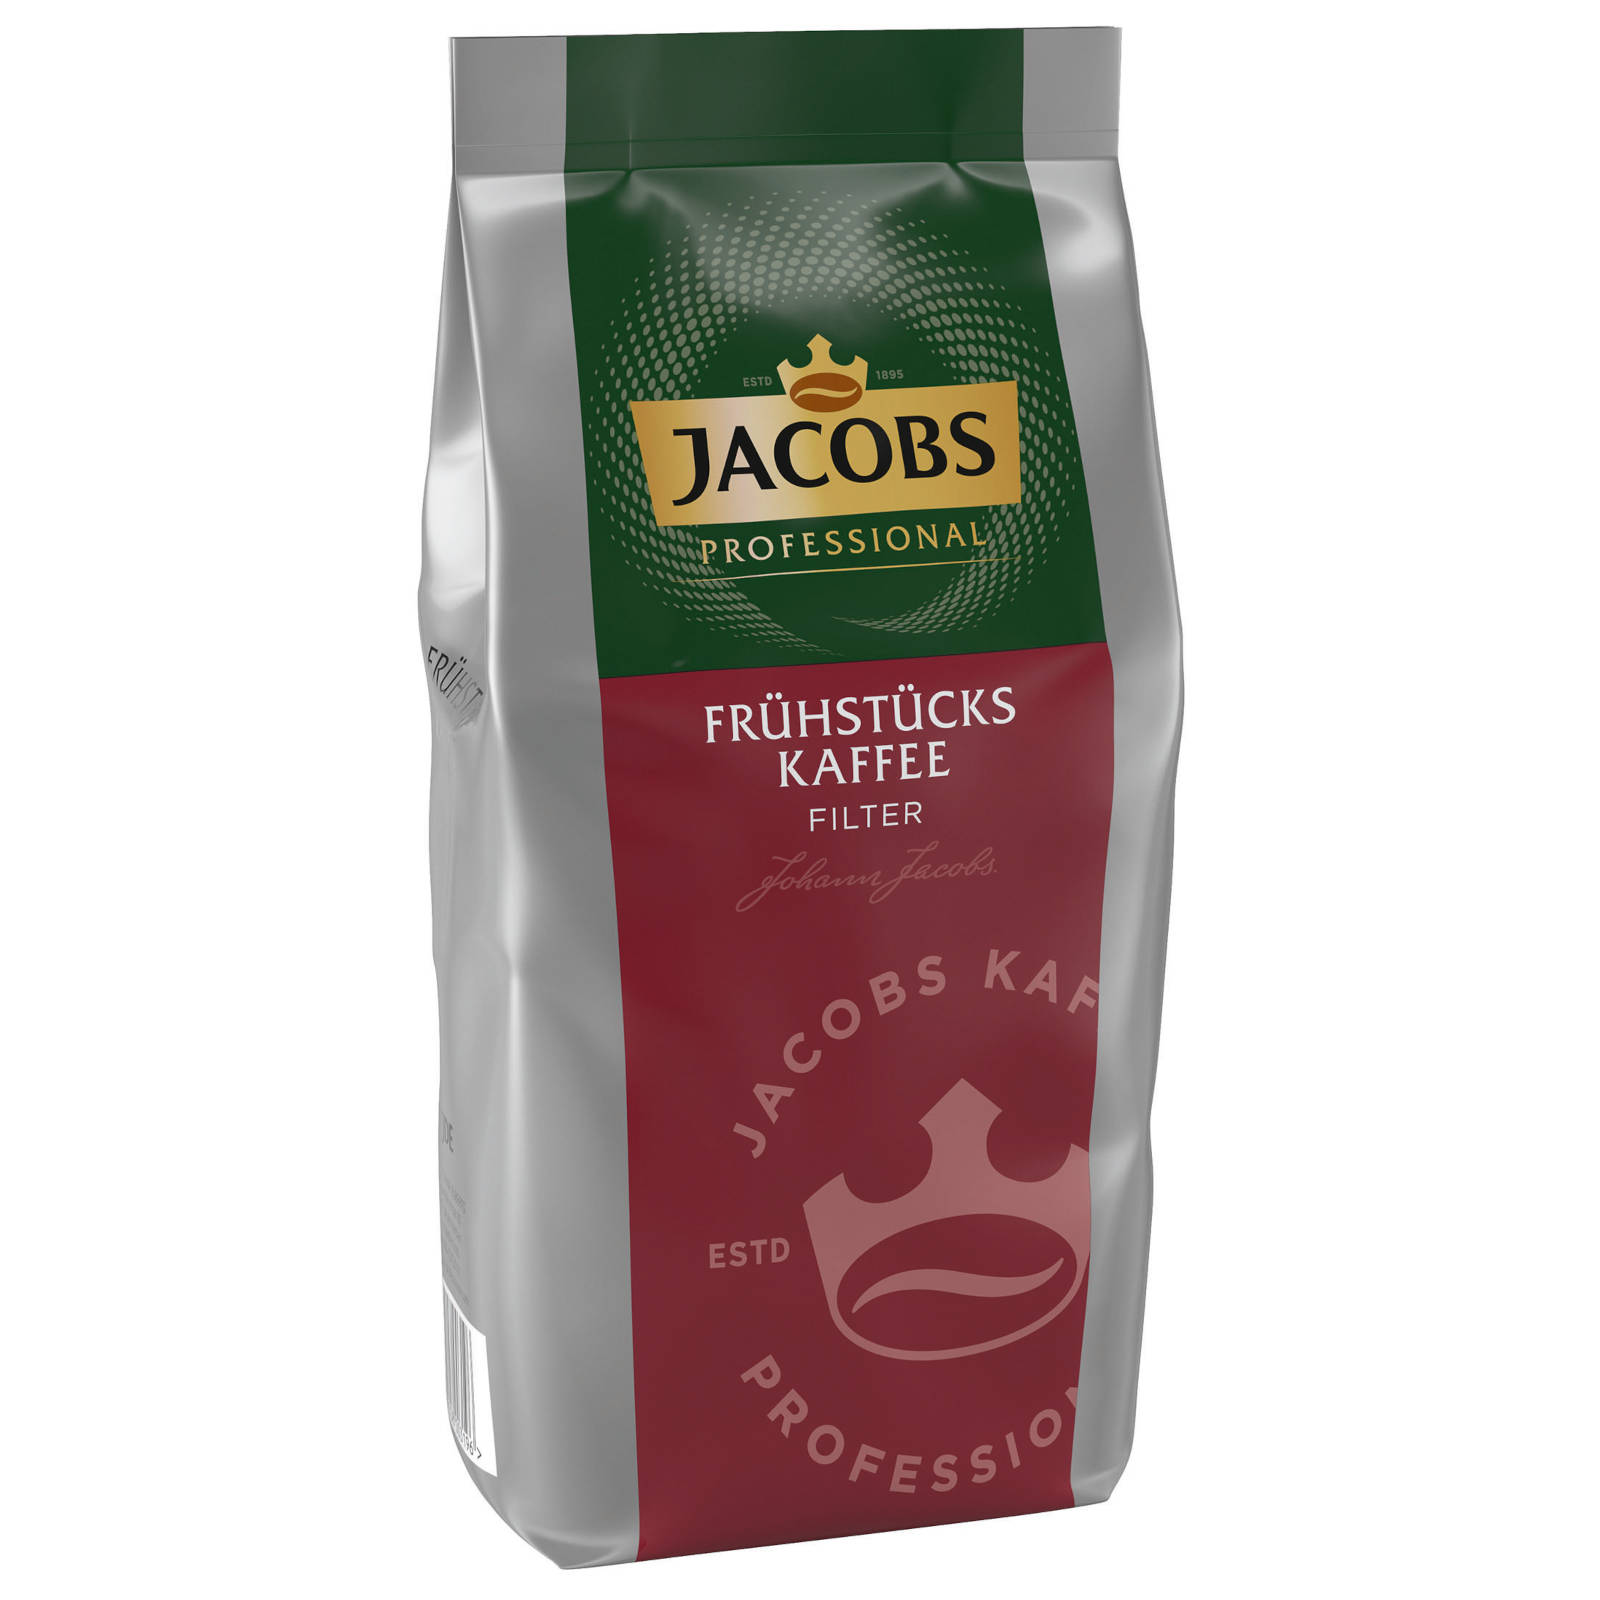 JACOBS kg Filterkaffee 10x1 Press) French (Filter, Professional Frühstückskaffee